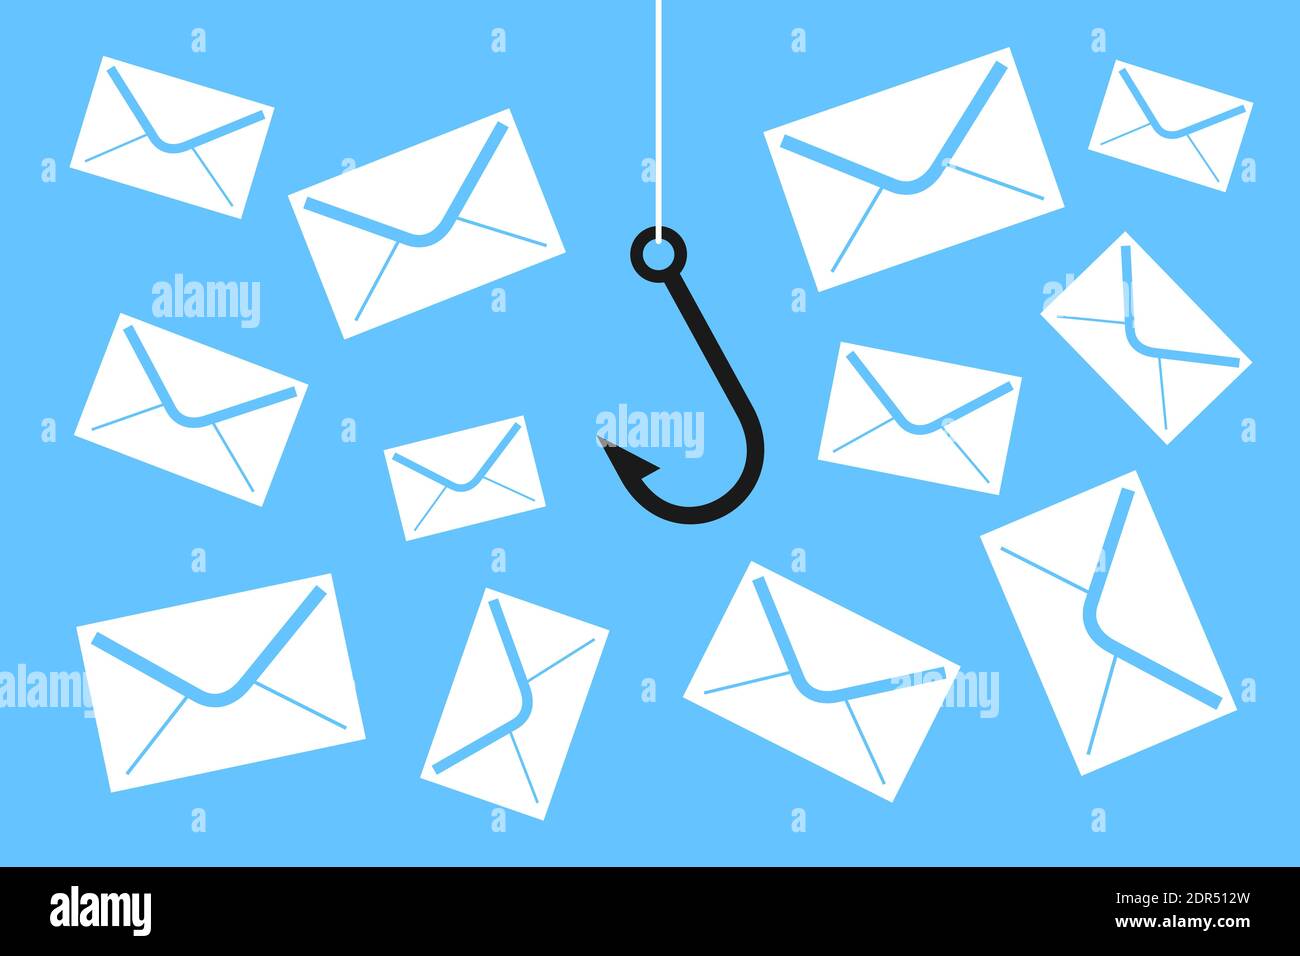 Phishing - Angelhaken fängt Briefumschlag als Metapher für betrügerische und täuschende gefährliche und riskante E-Mail-Korrespondenz. Vektorgrafiken Stockfoto